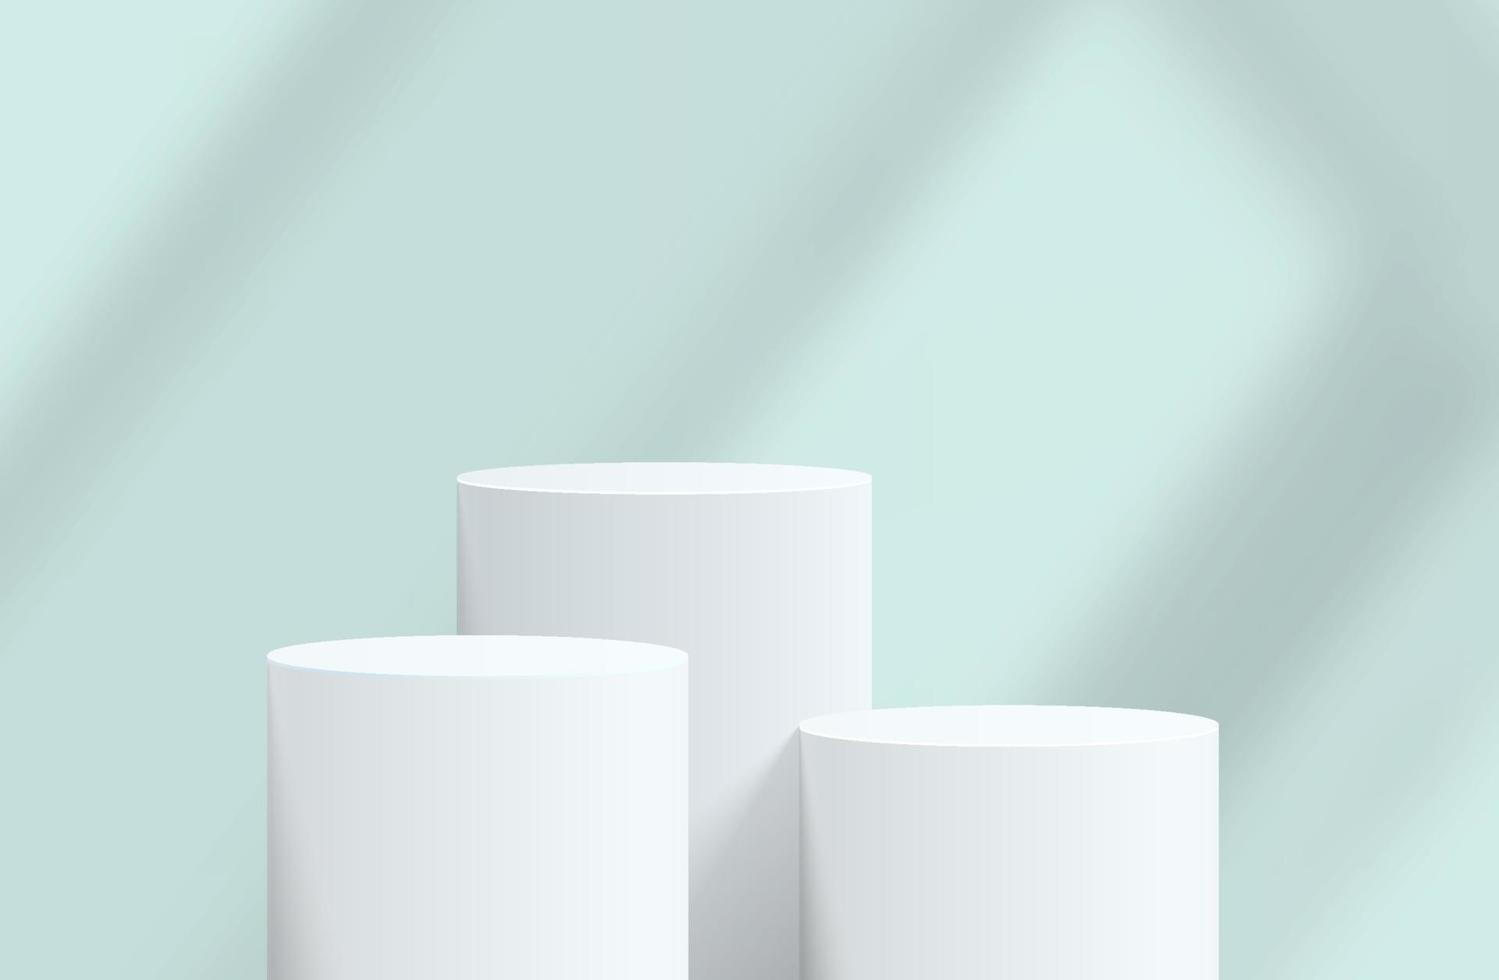 podium de piédestal de cylindre 3d réaliste blanc abstrait avec fond bleu et superposition d'ombre. plate-forme géométrique de rendu vectoriel abstrait. présentation de l'affichage du produit. scène minimale.